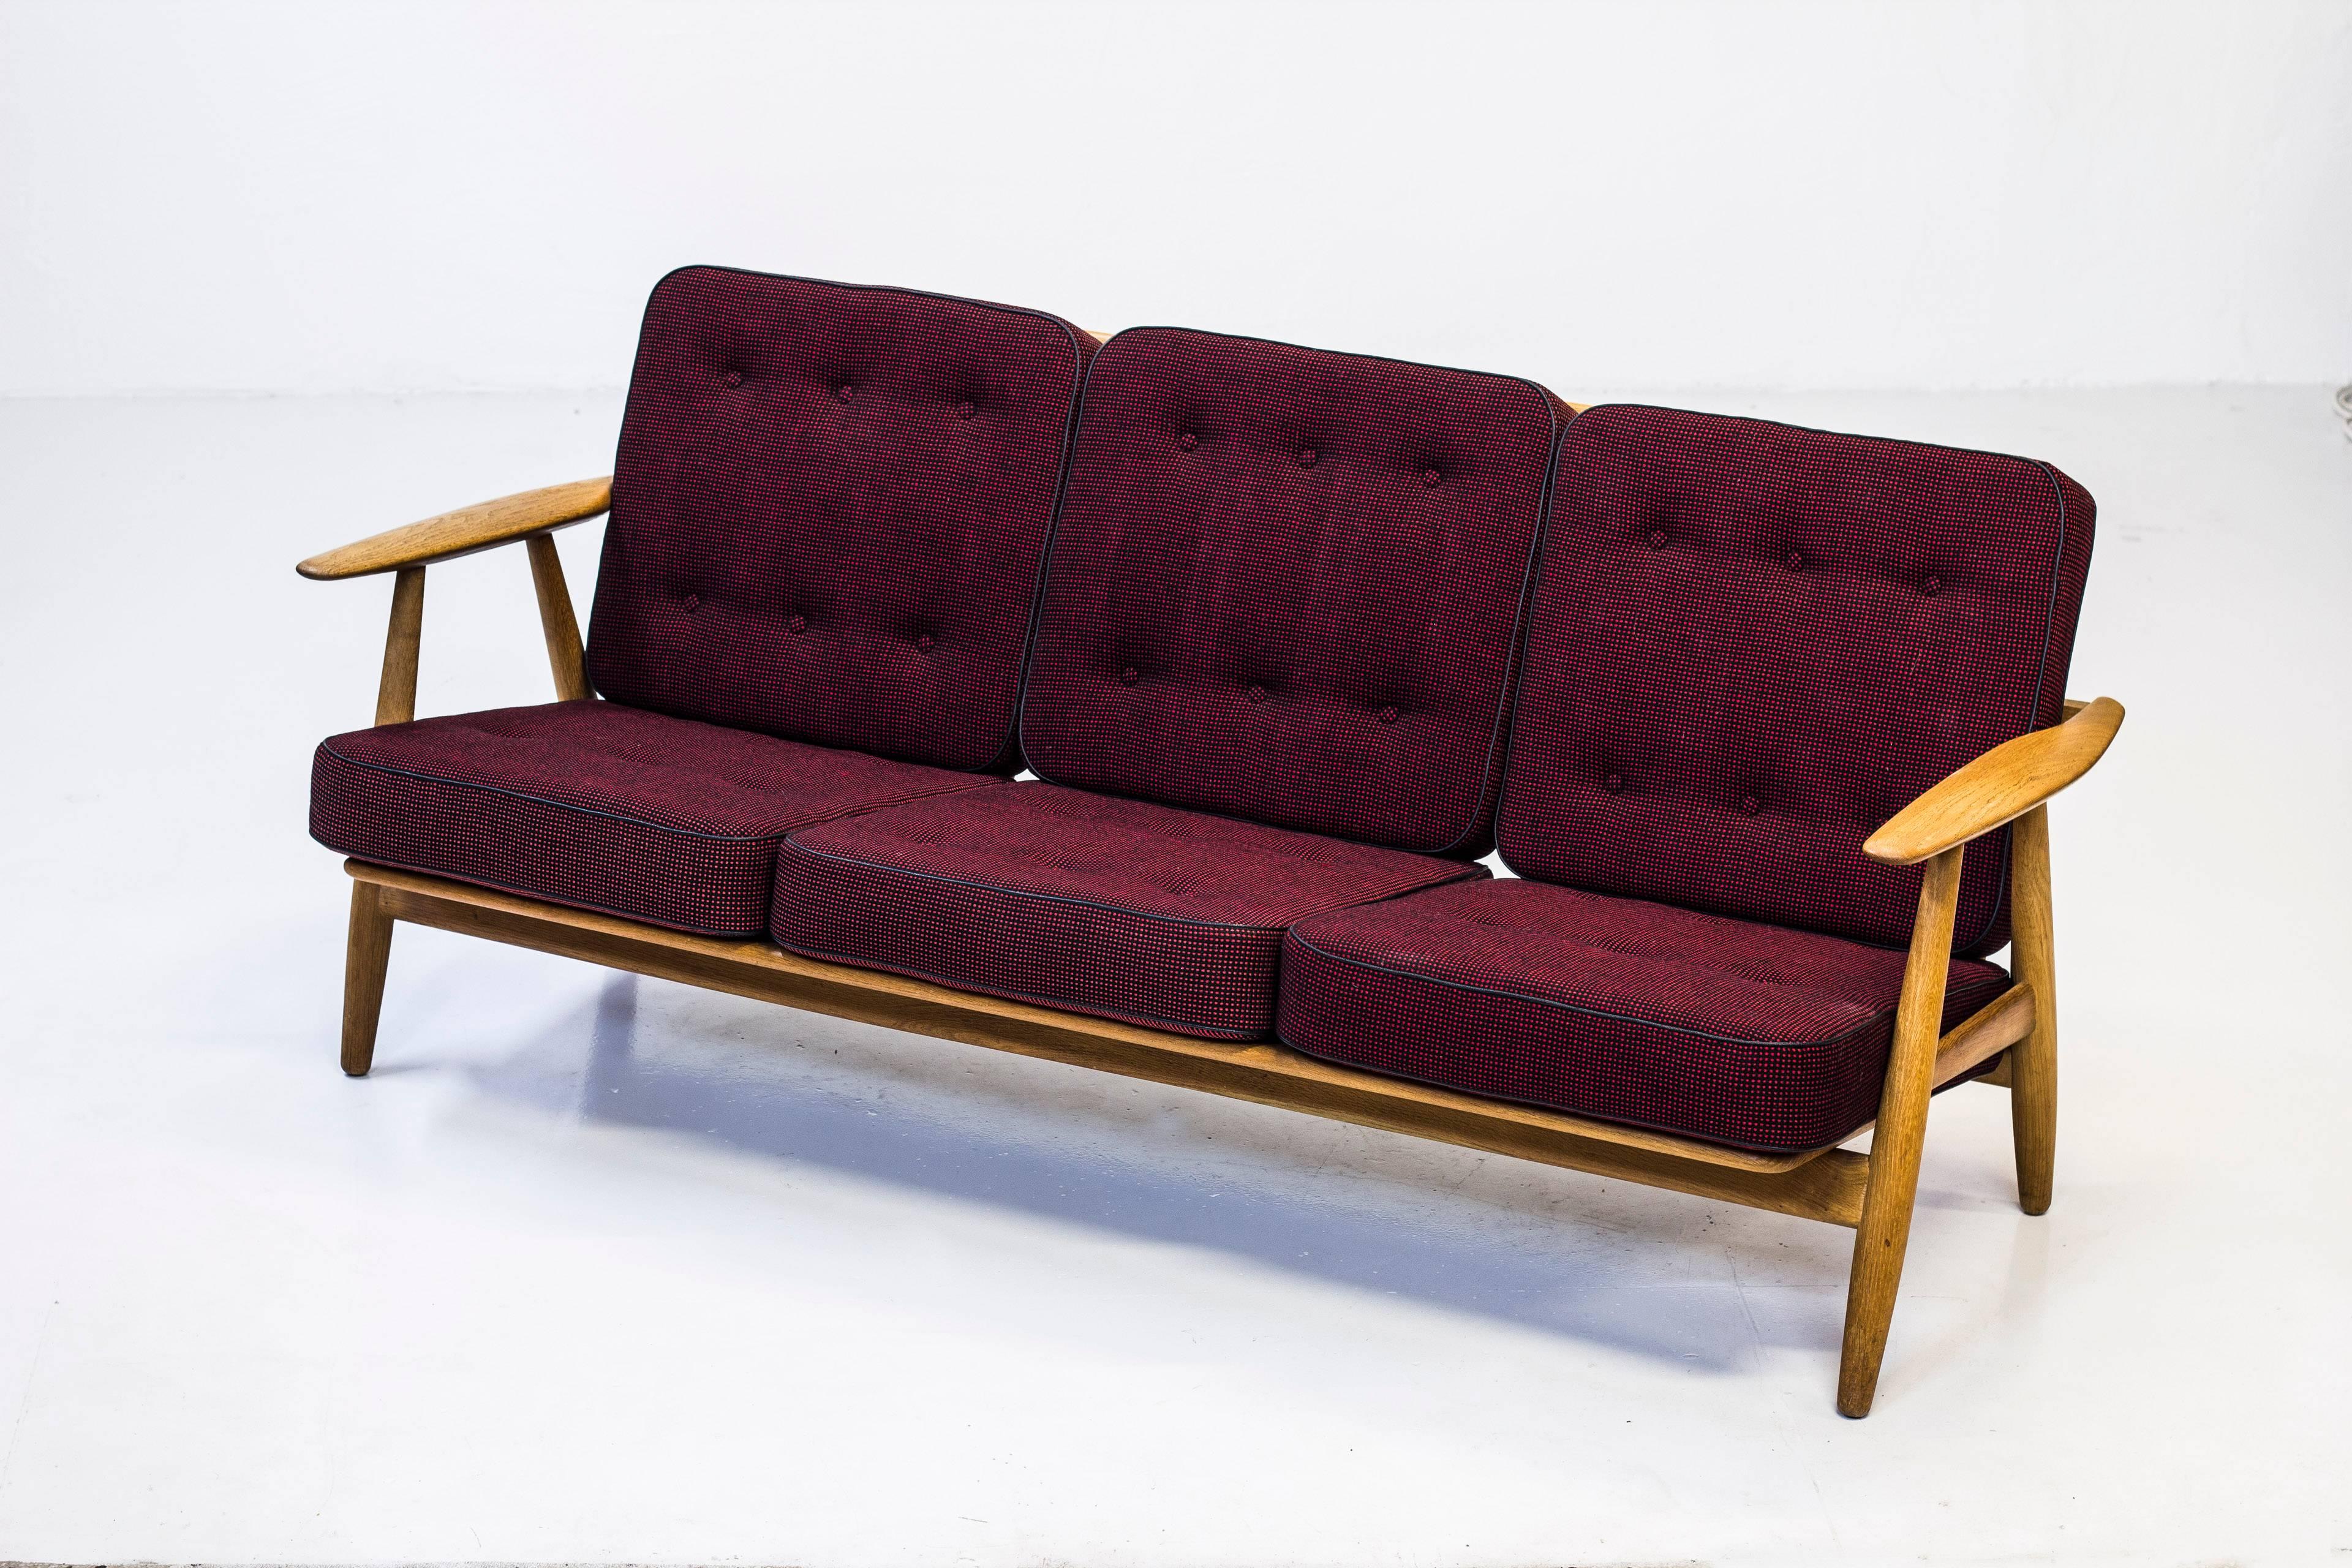 GE-240 "Cigar" Sofa by Hans J. Wegner, Denmark, 1950s For Sale at 1stDibs